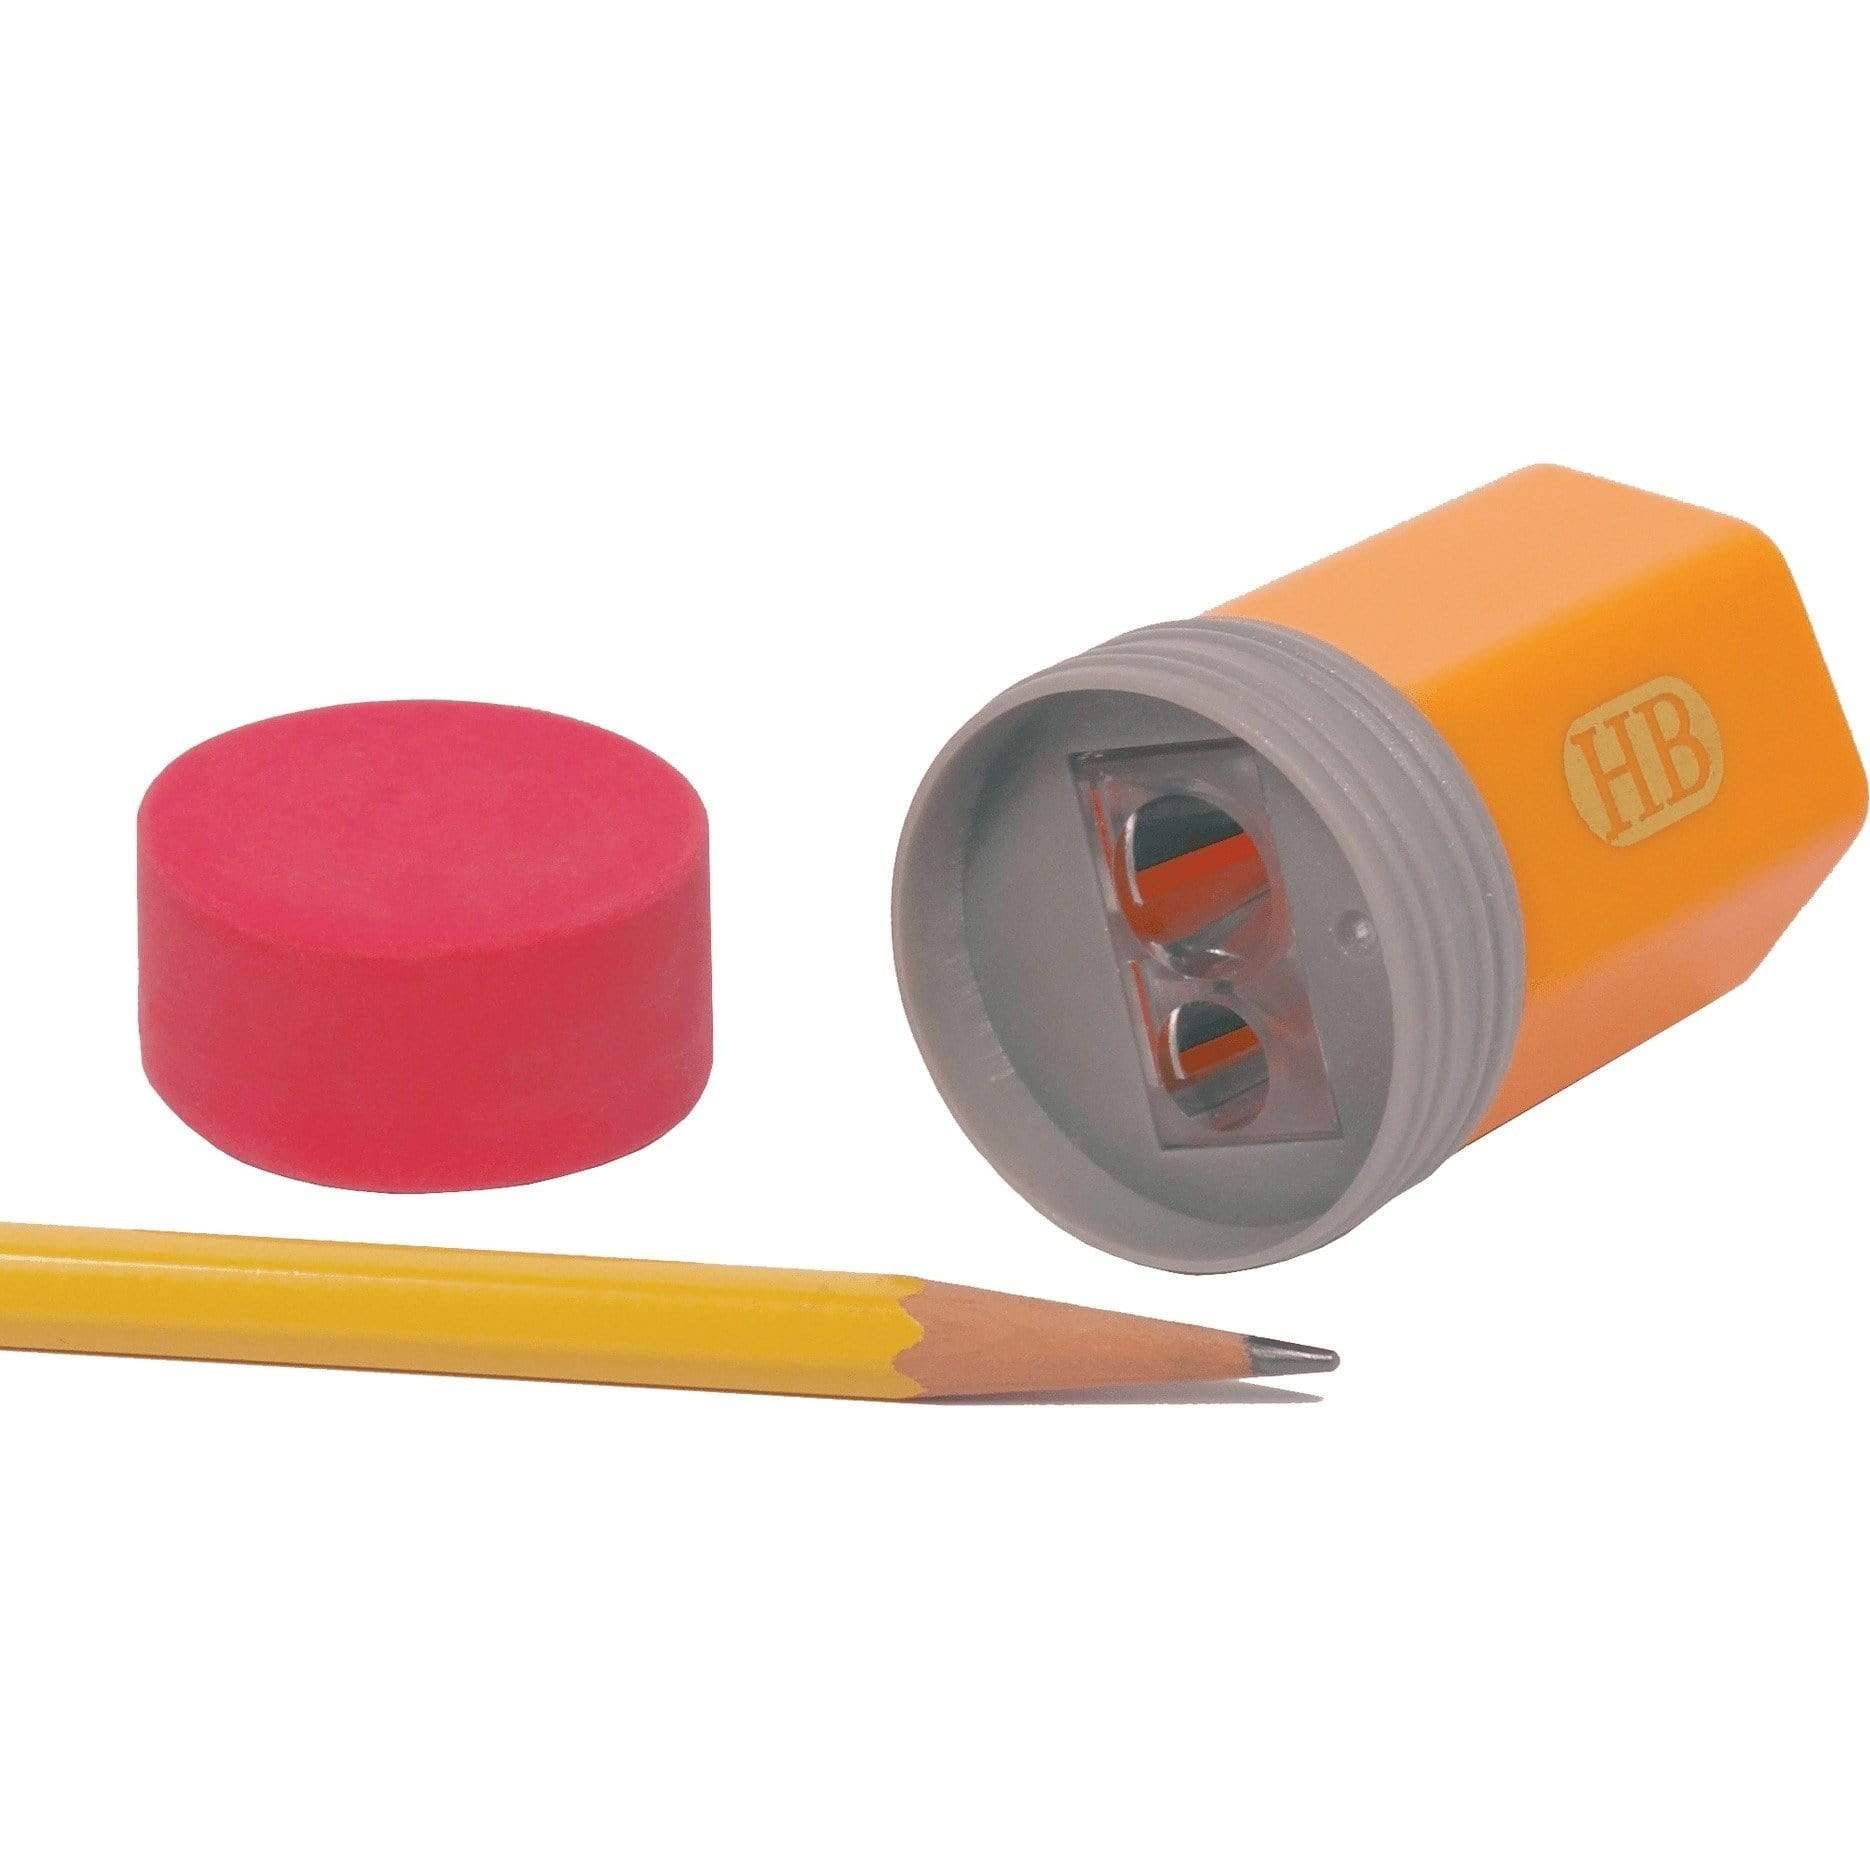 Streamline Pencil Top Sharpener & Eraser Set